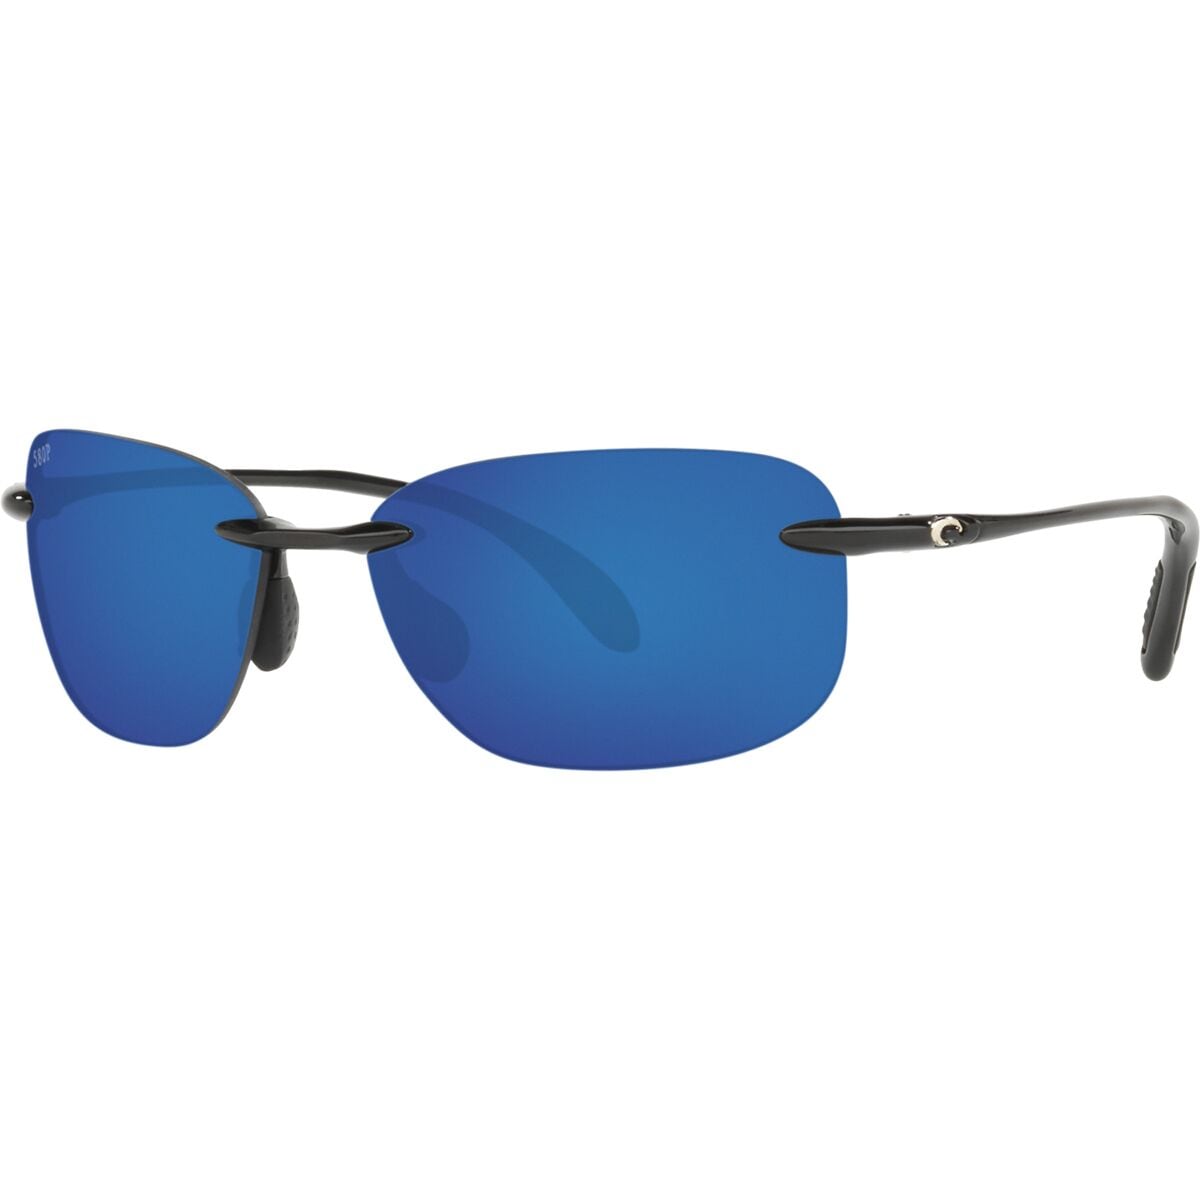 Costa Seagrove 580P Polarized Sunglasses